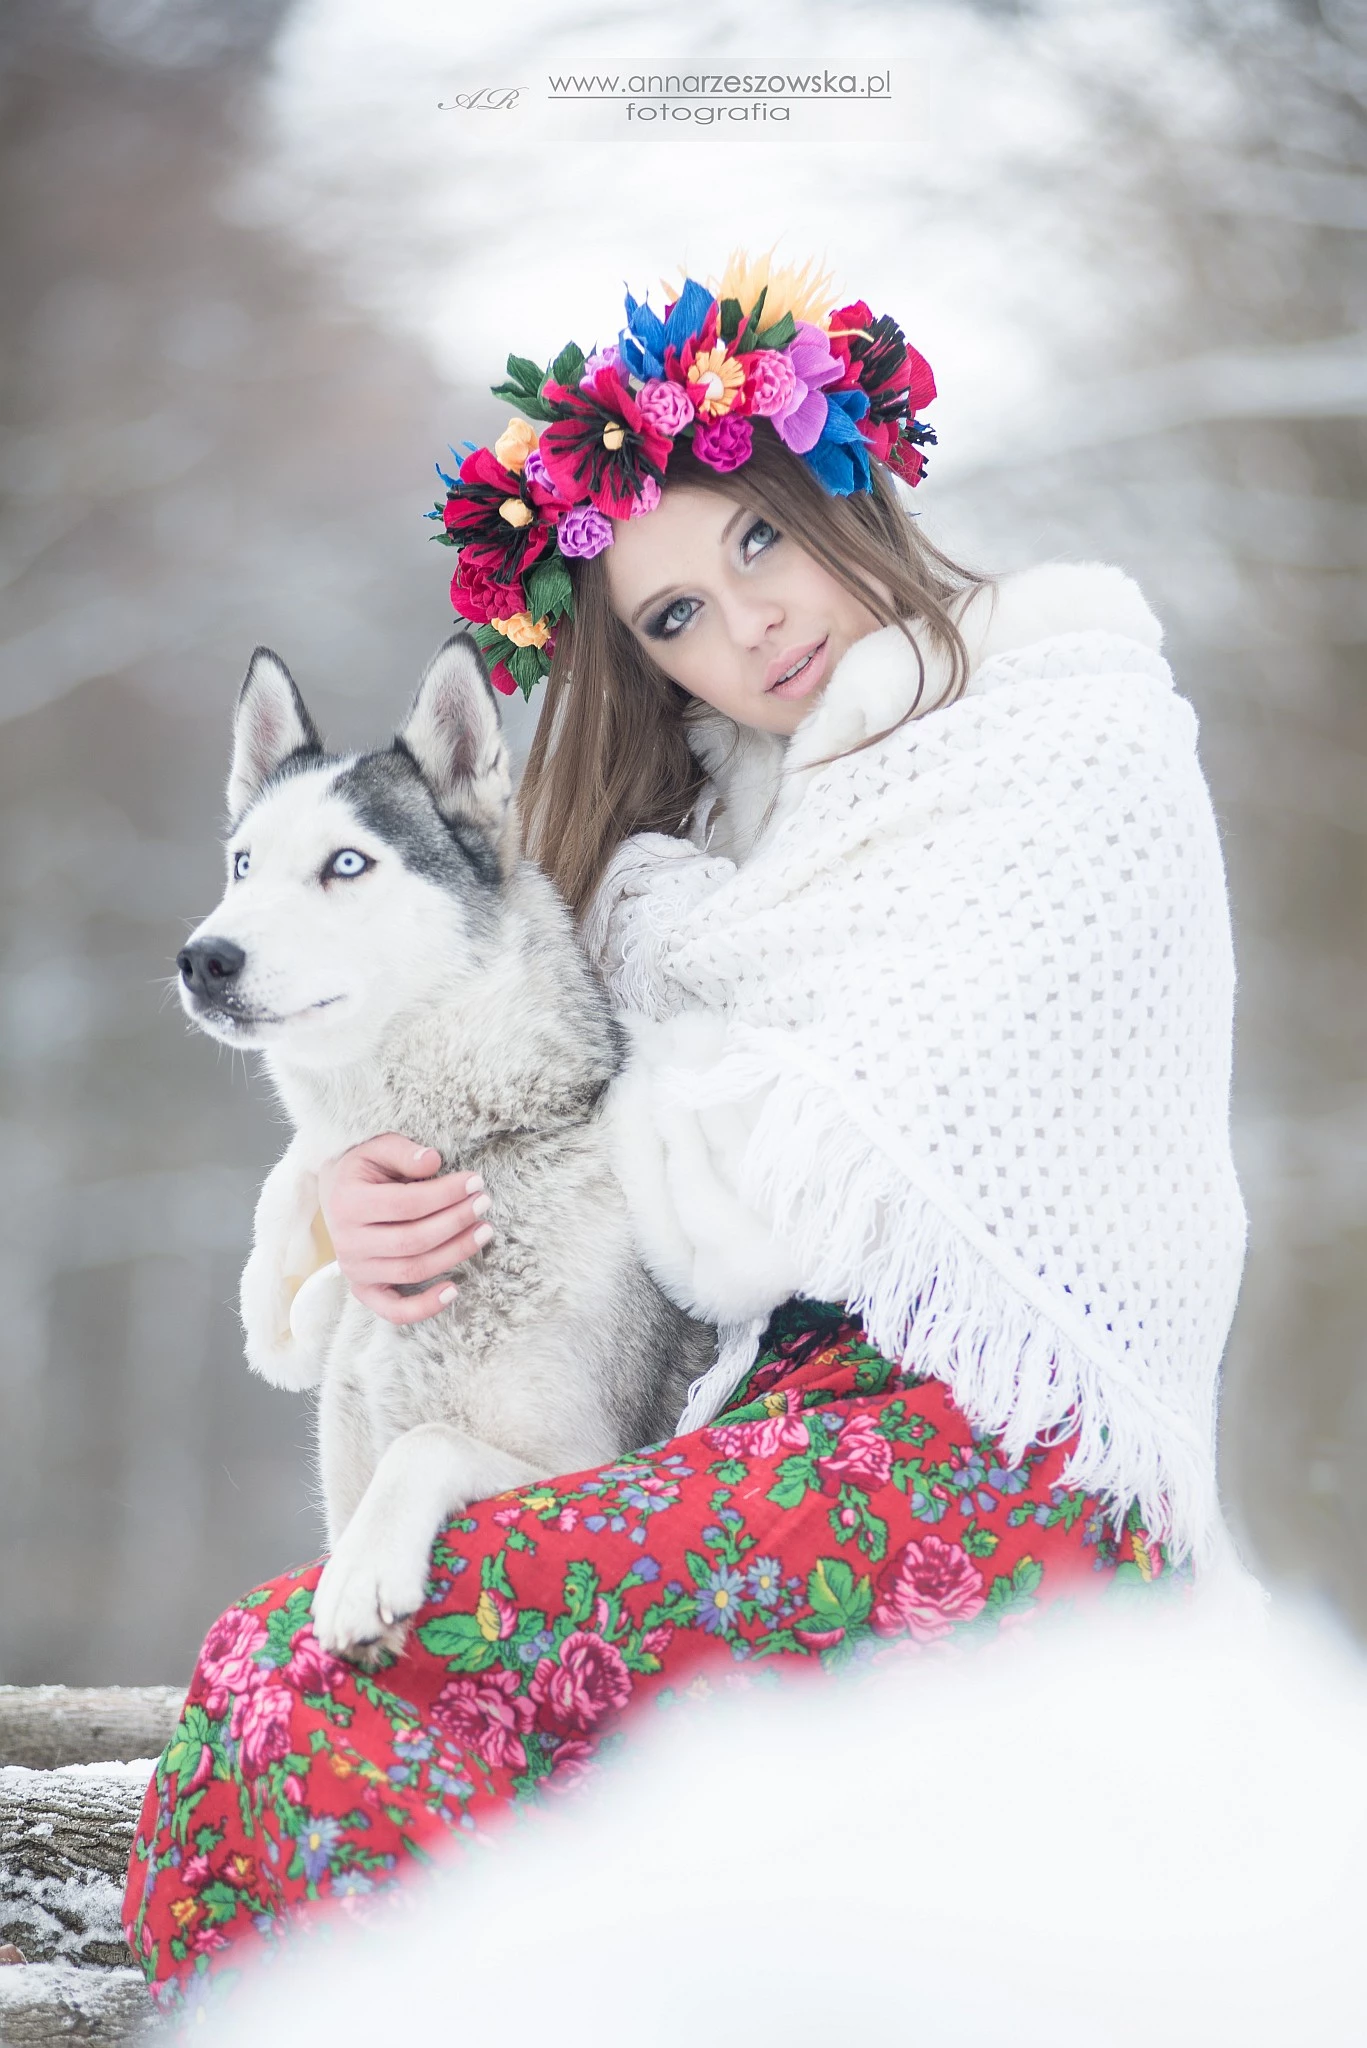 zdjęcia katowice fotograf anna-rzeszowska portfolio zimowe sesje zdjeciowe zima snieg